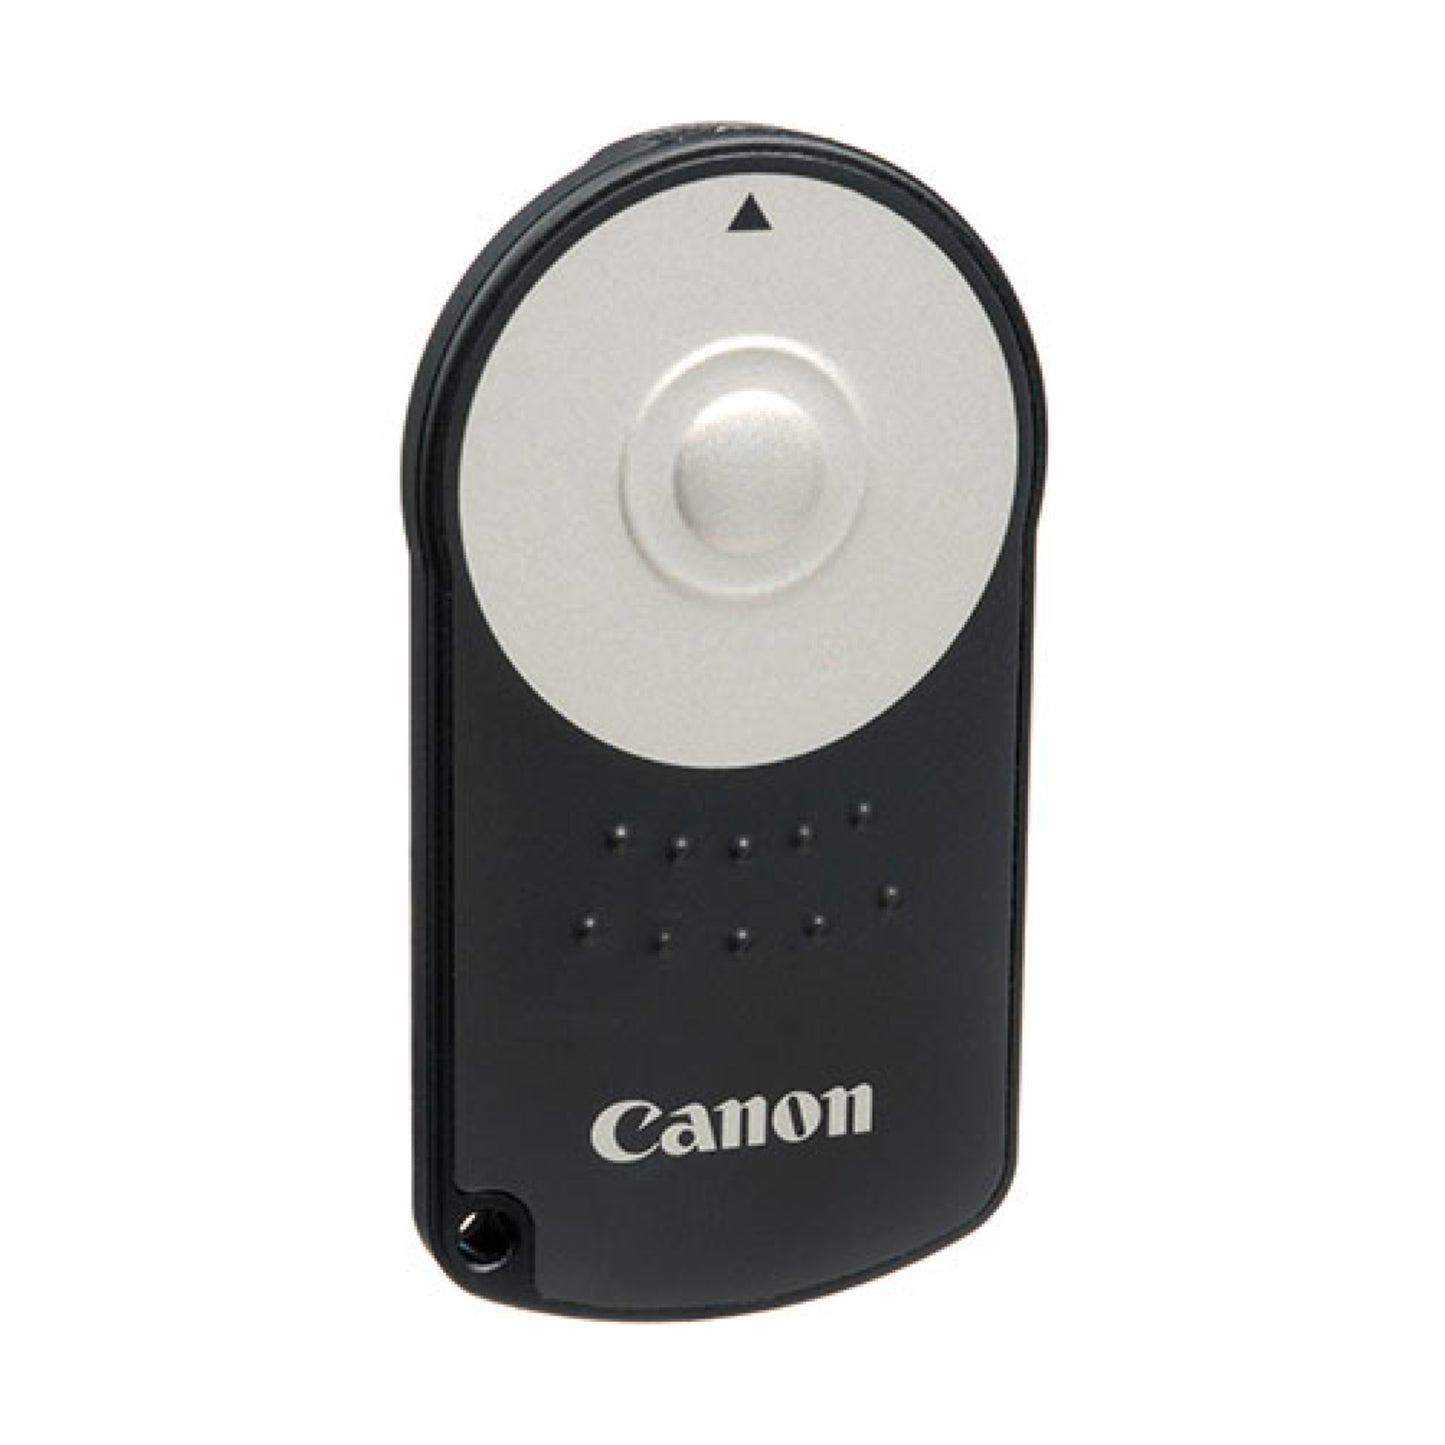 Hire Canon RC-6 Wireless Remote Control At Topic Rentals